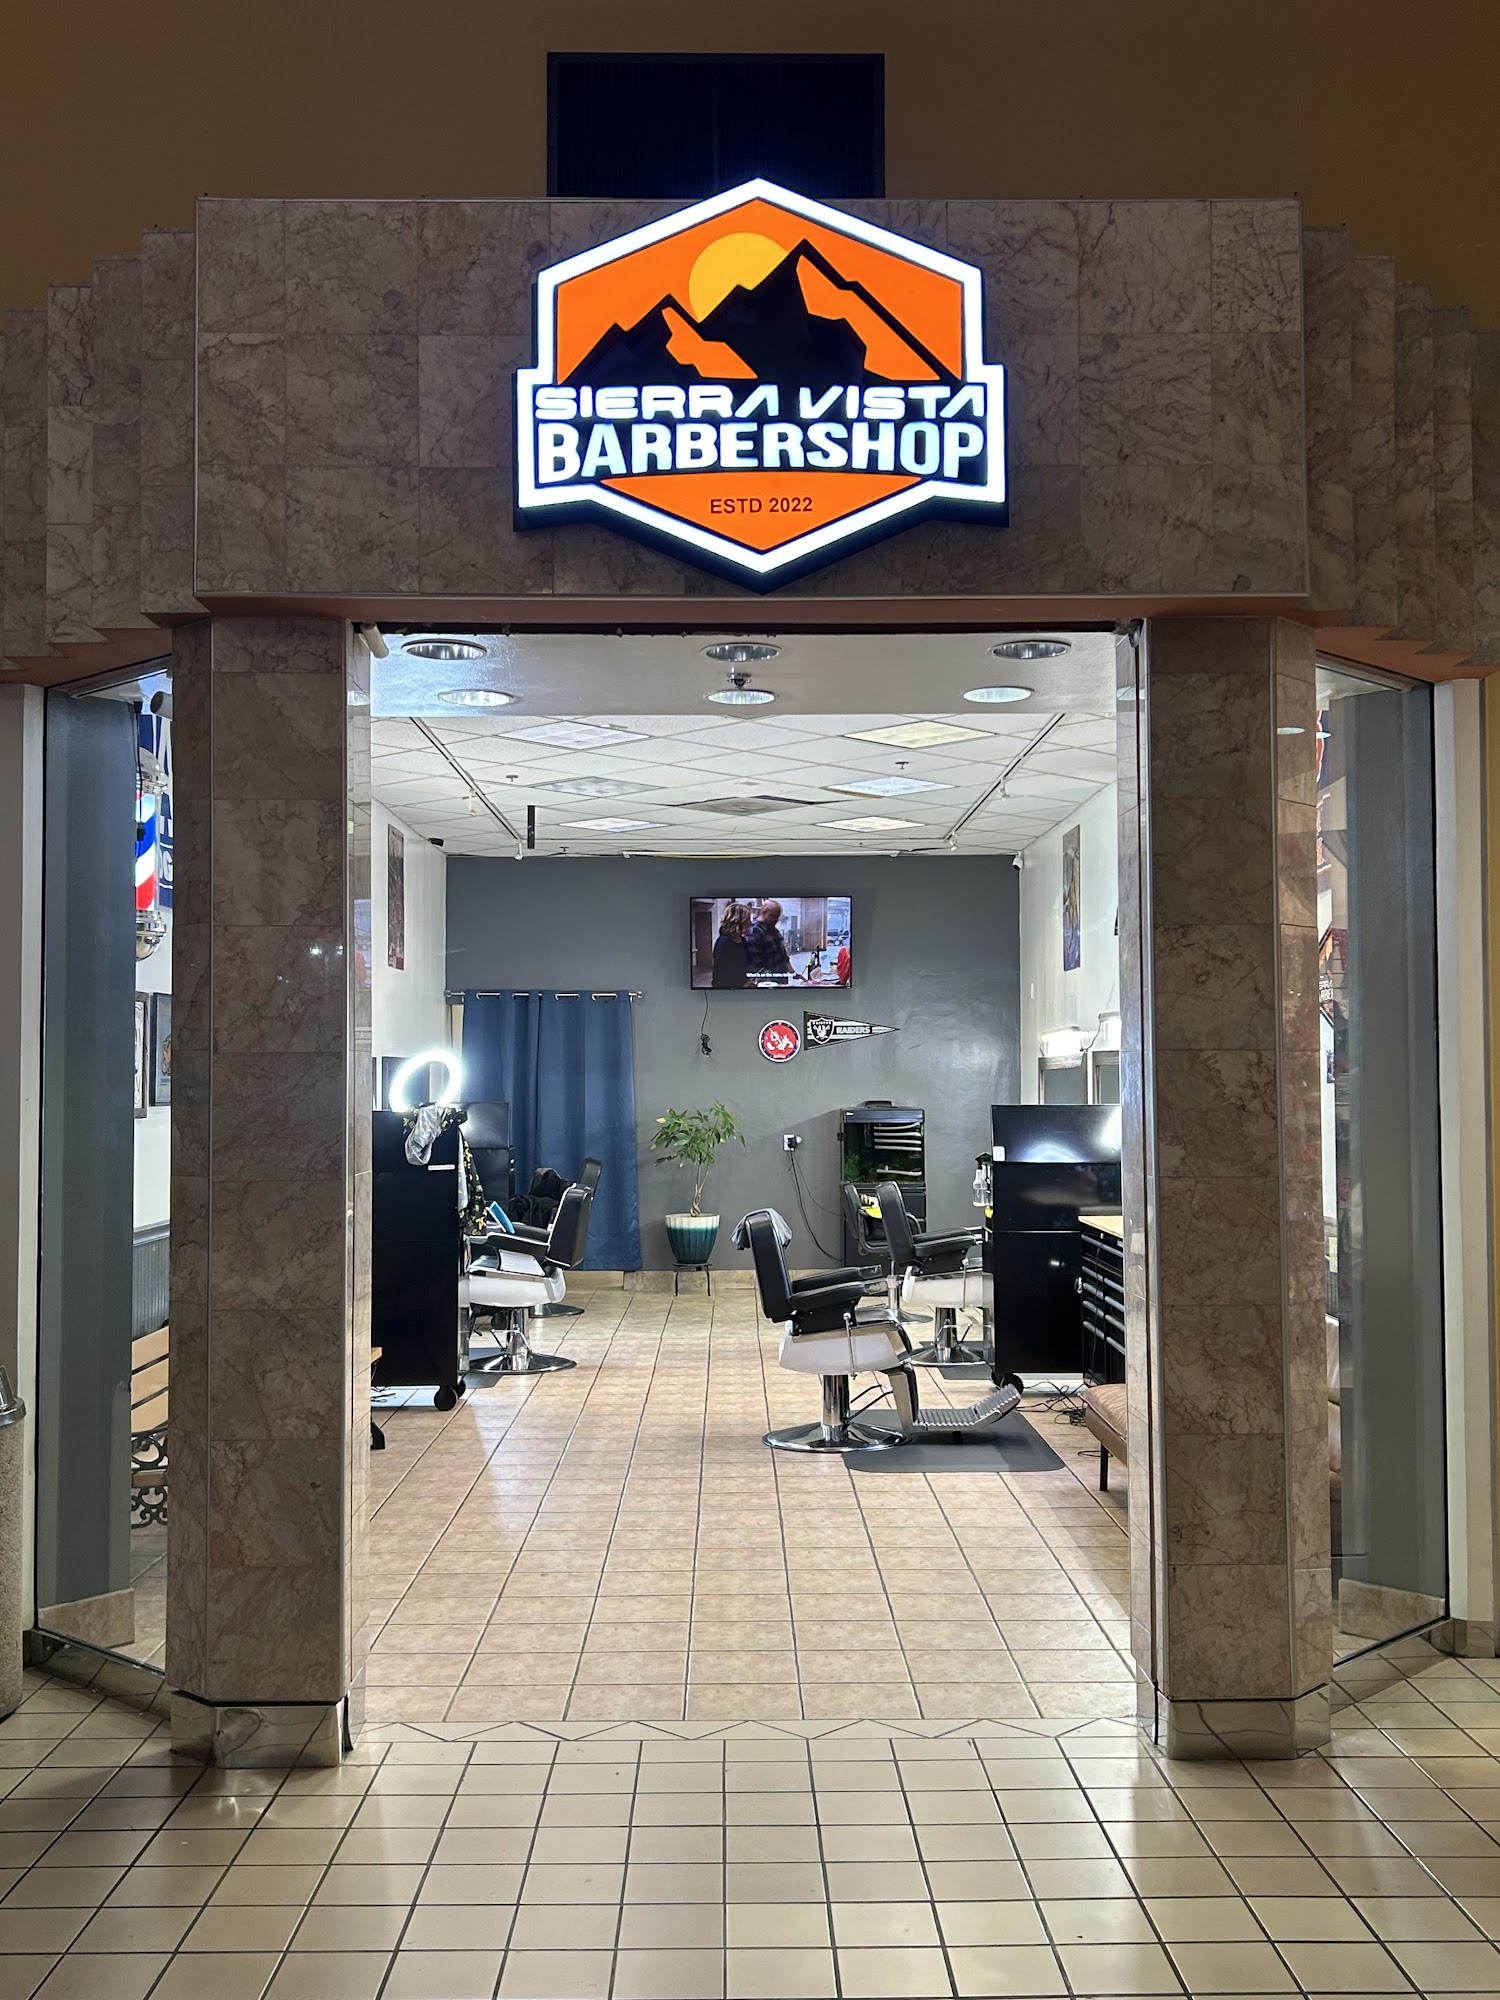 Sierra vista barbershop